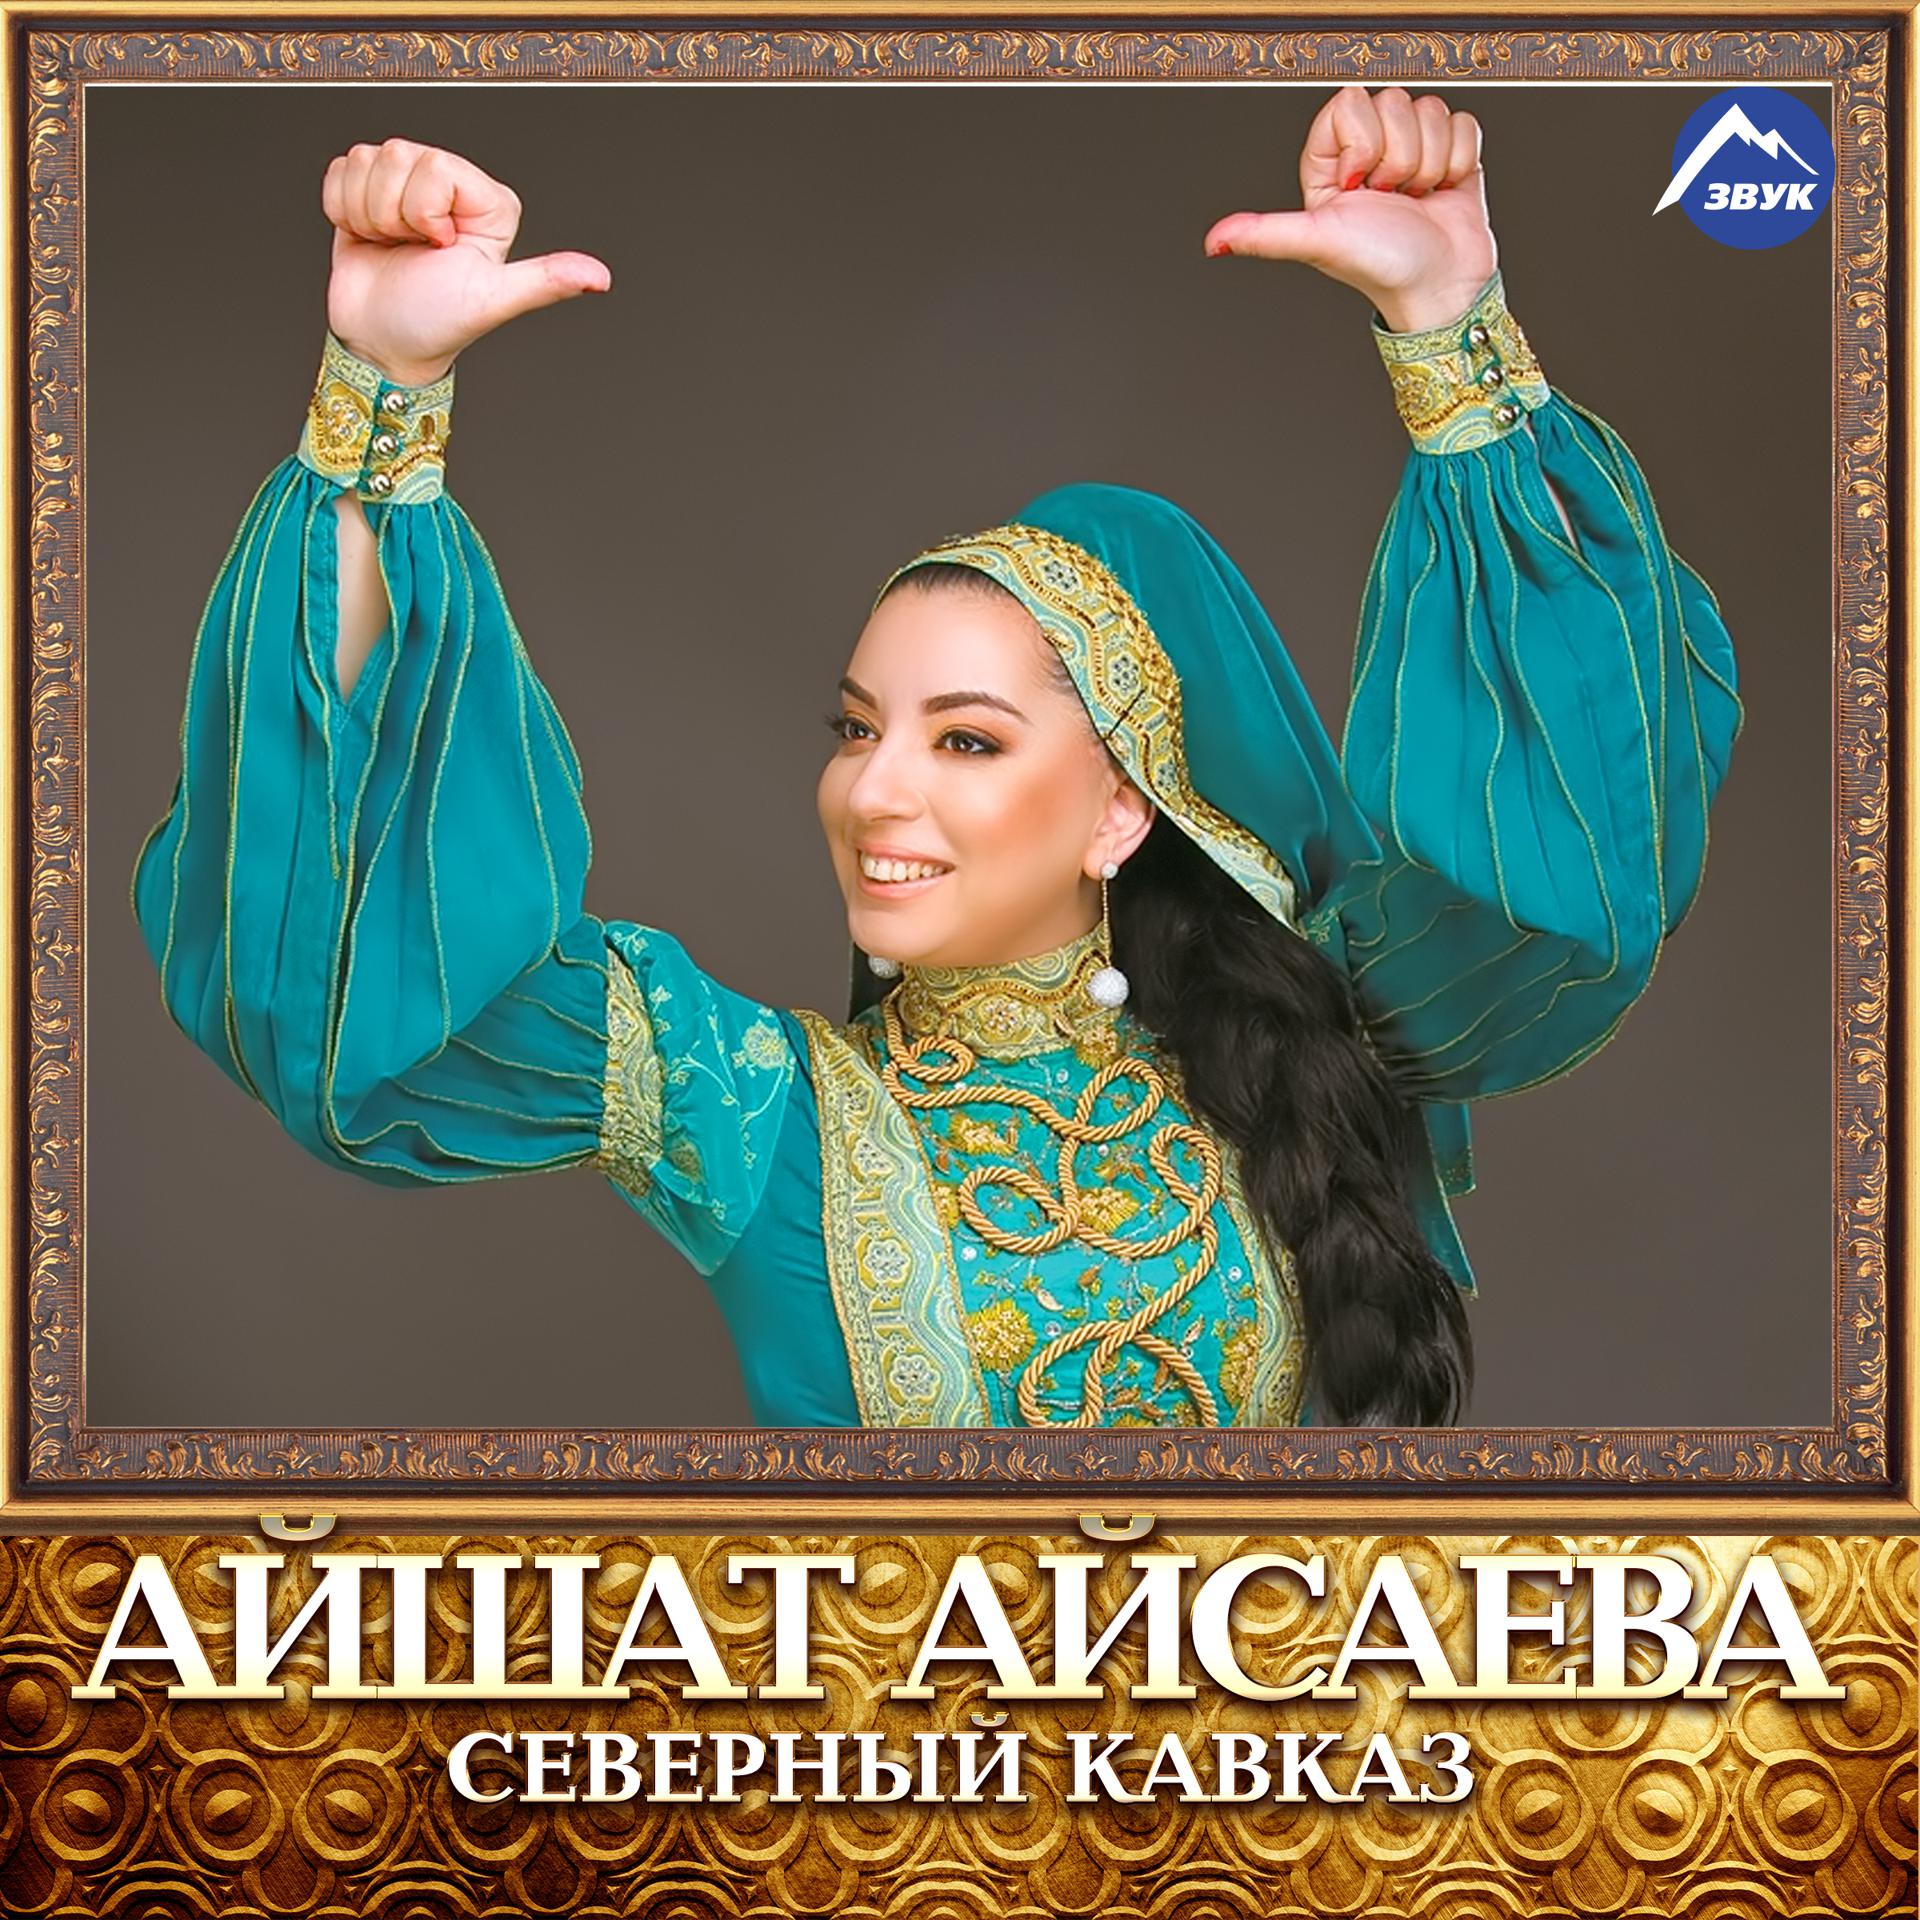 Кавказские песни мама